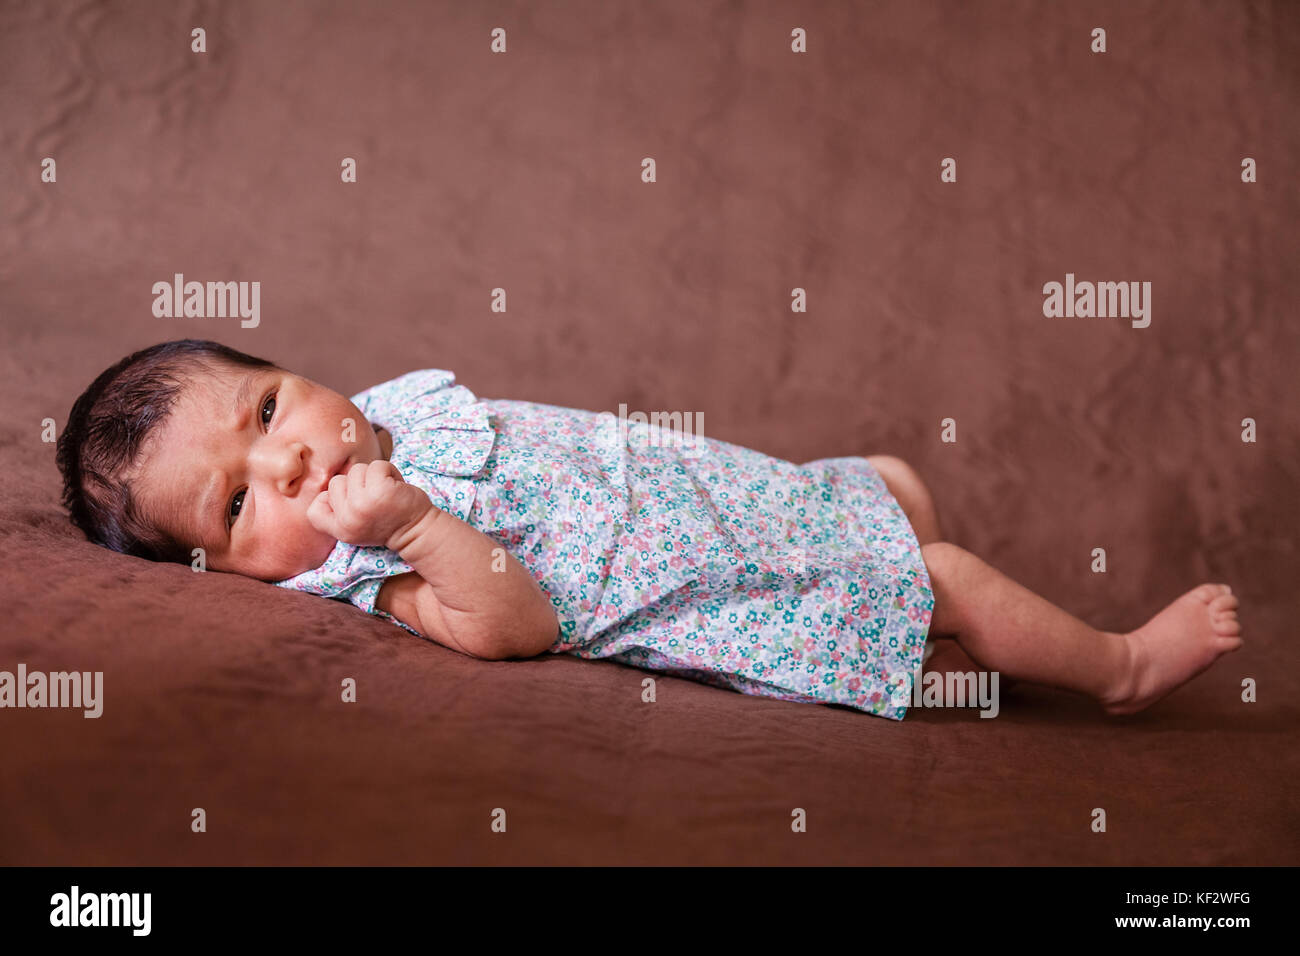 Cute deux semaines Naissance bebe Fille allongée, les yeux ouverts et à la recherche autour de porter une robe florale / Naissance bebe Fille couché lit enfant yeux Banque D'Images